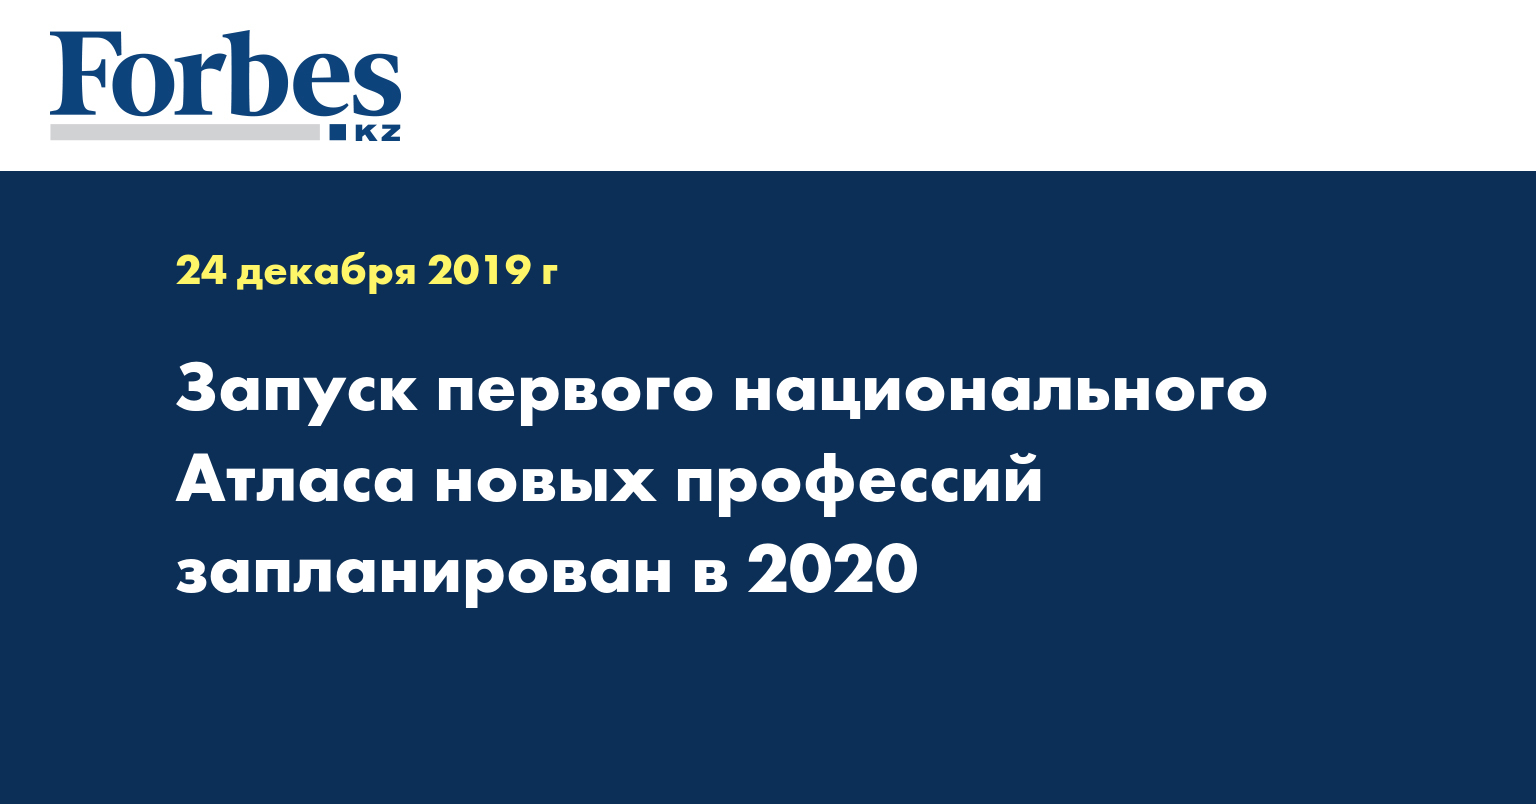 Запуск первого национального Атласа новых профессий запланирован в 2020